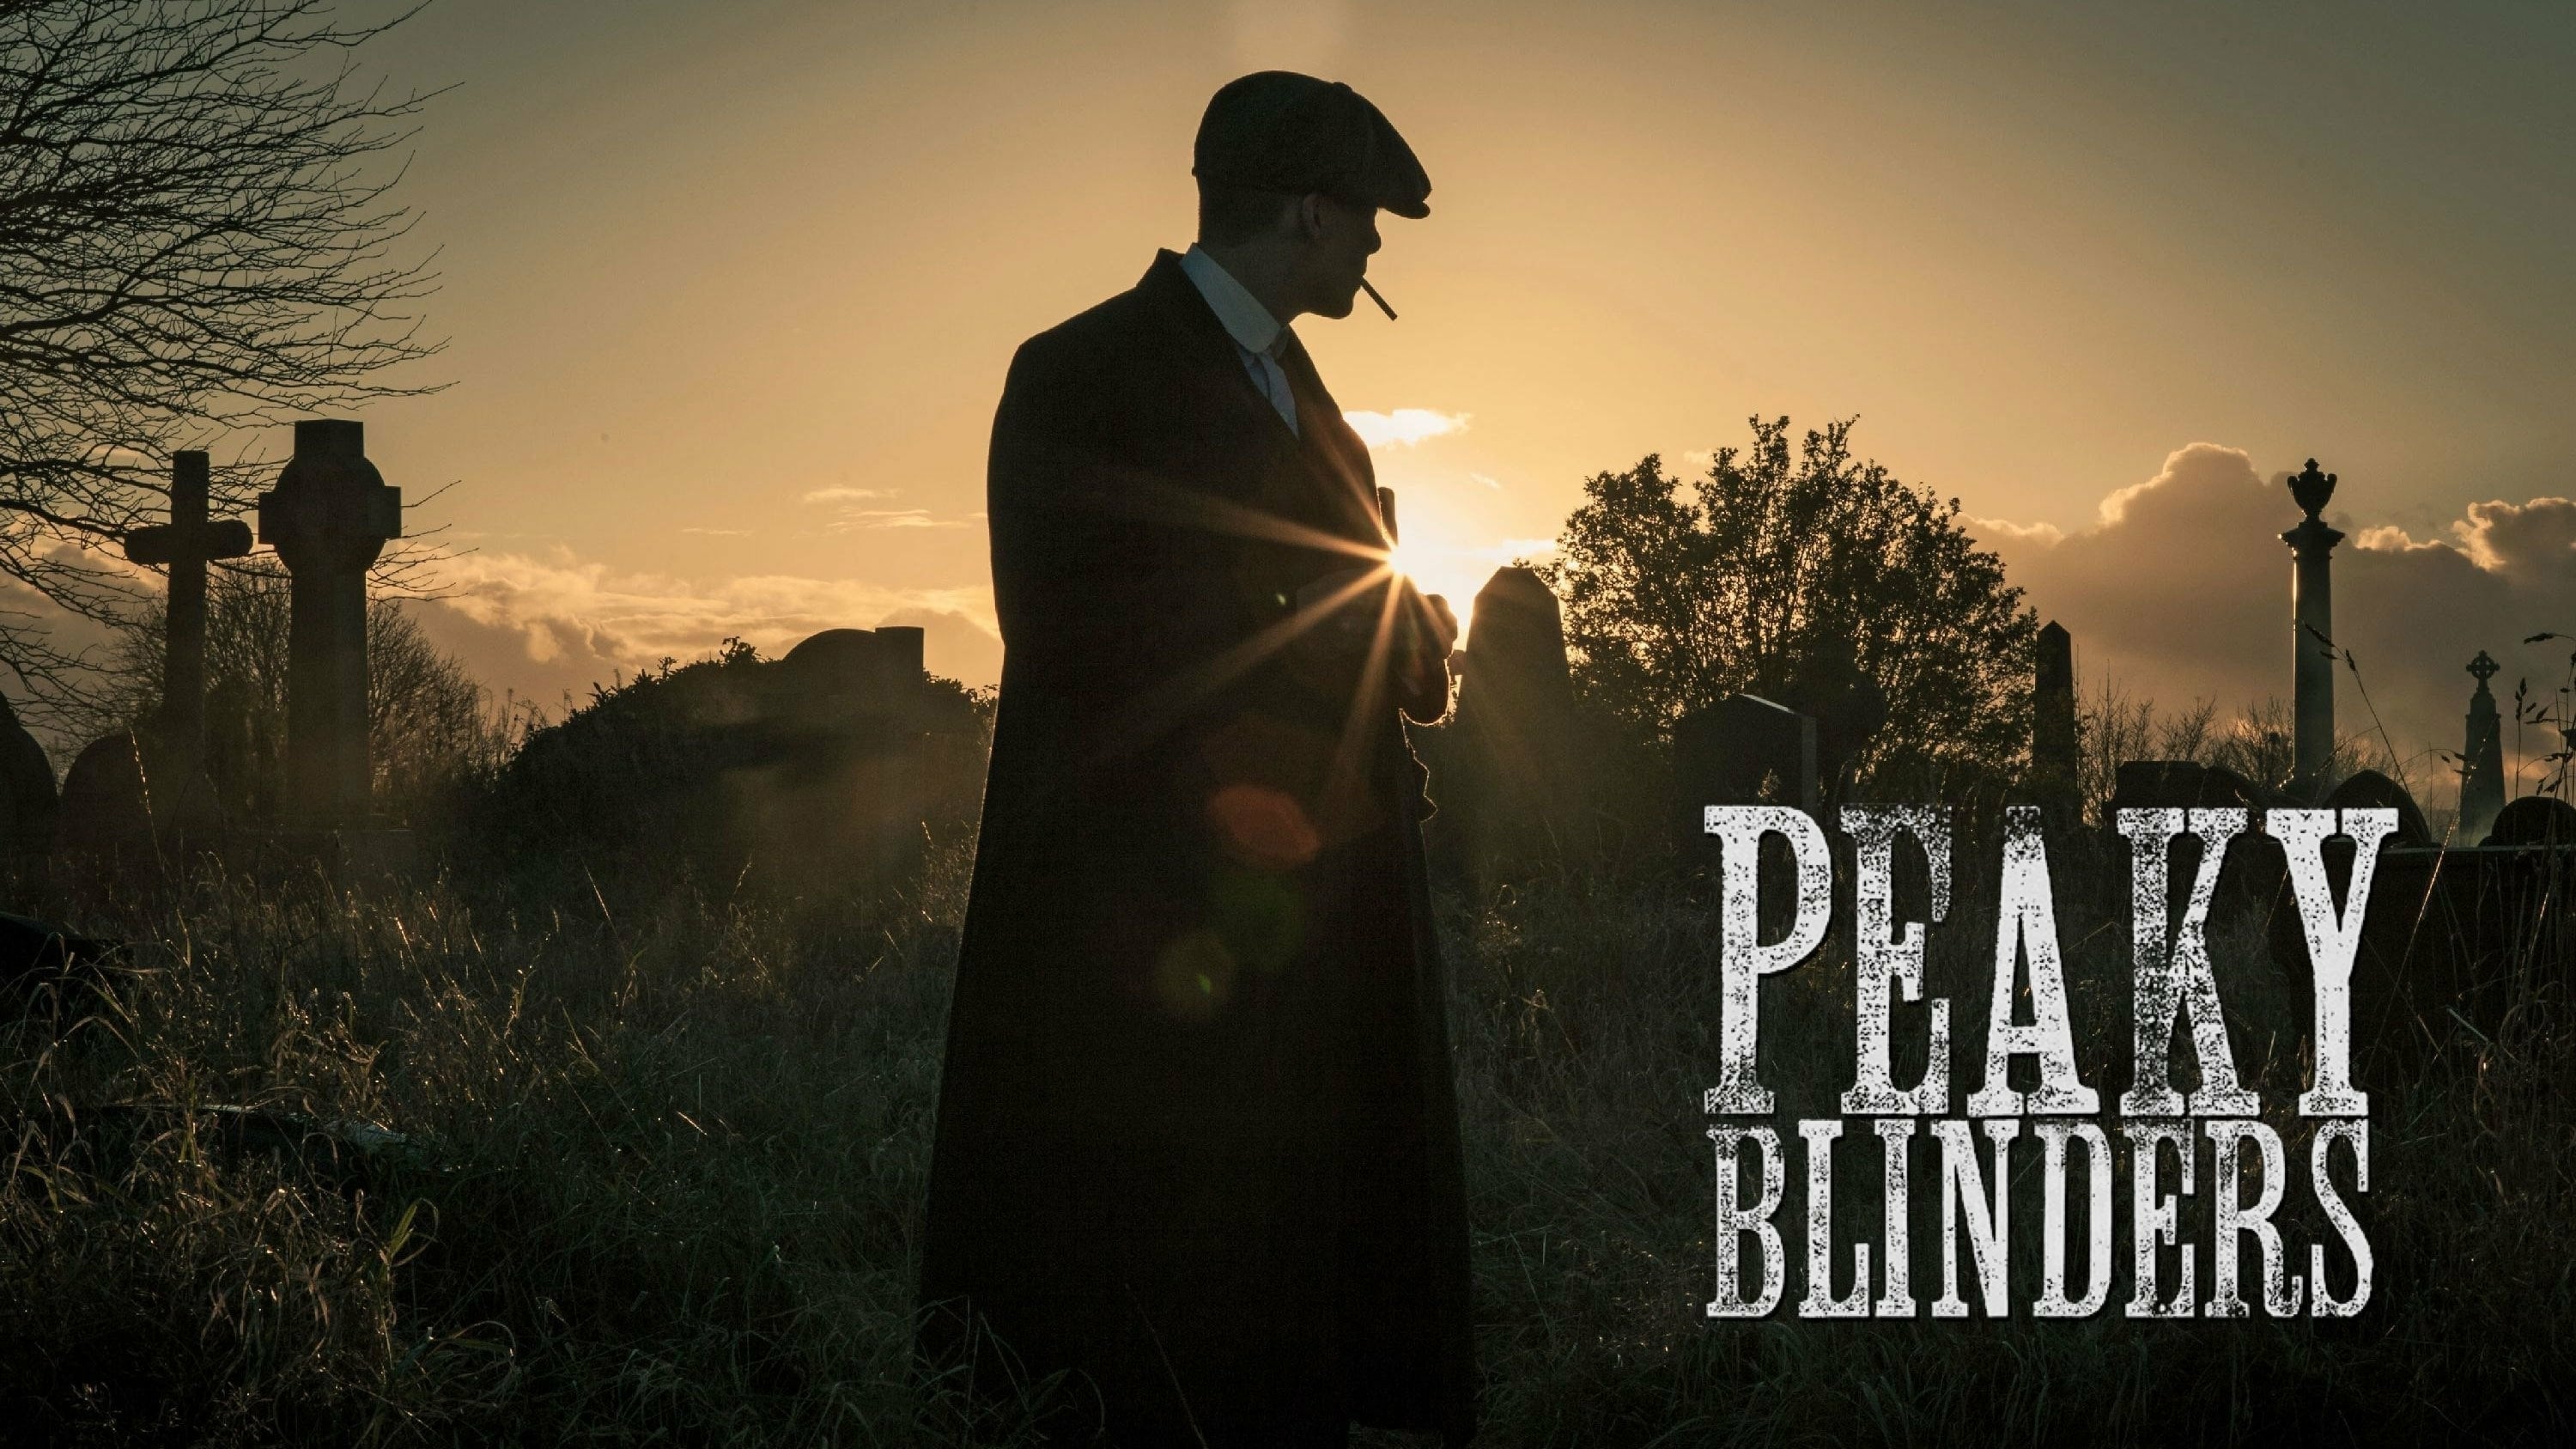 Peaky Blinders - Series 3